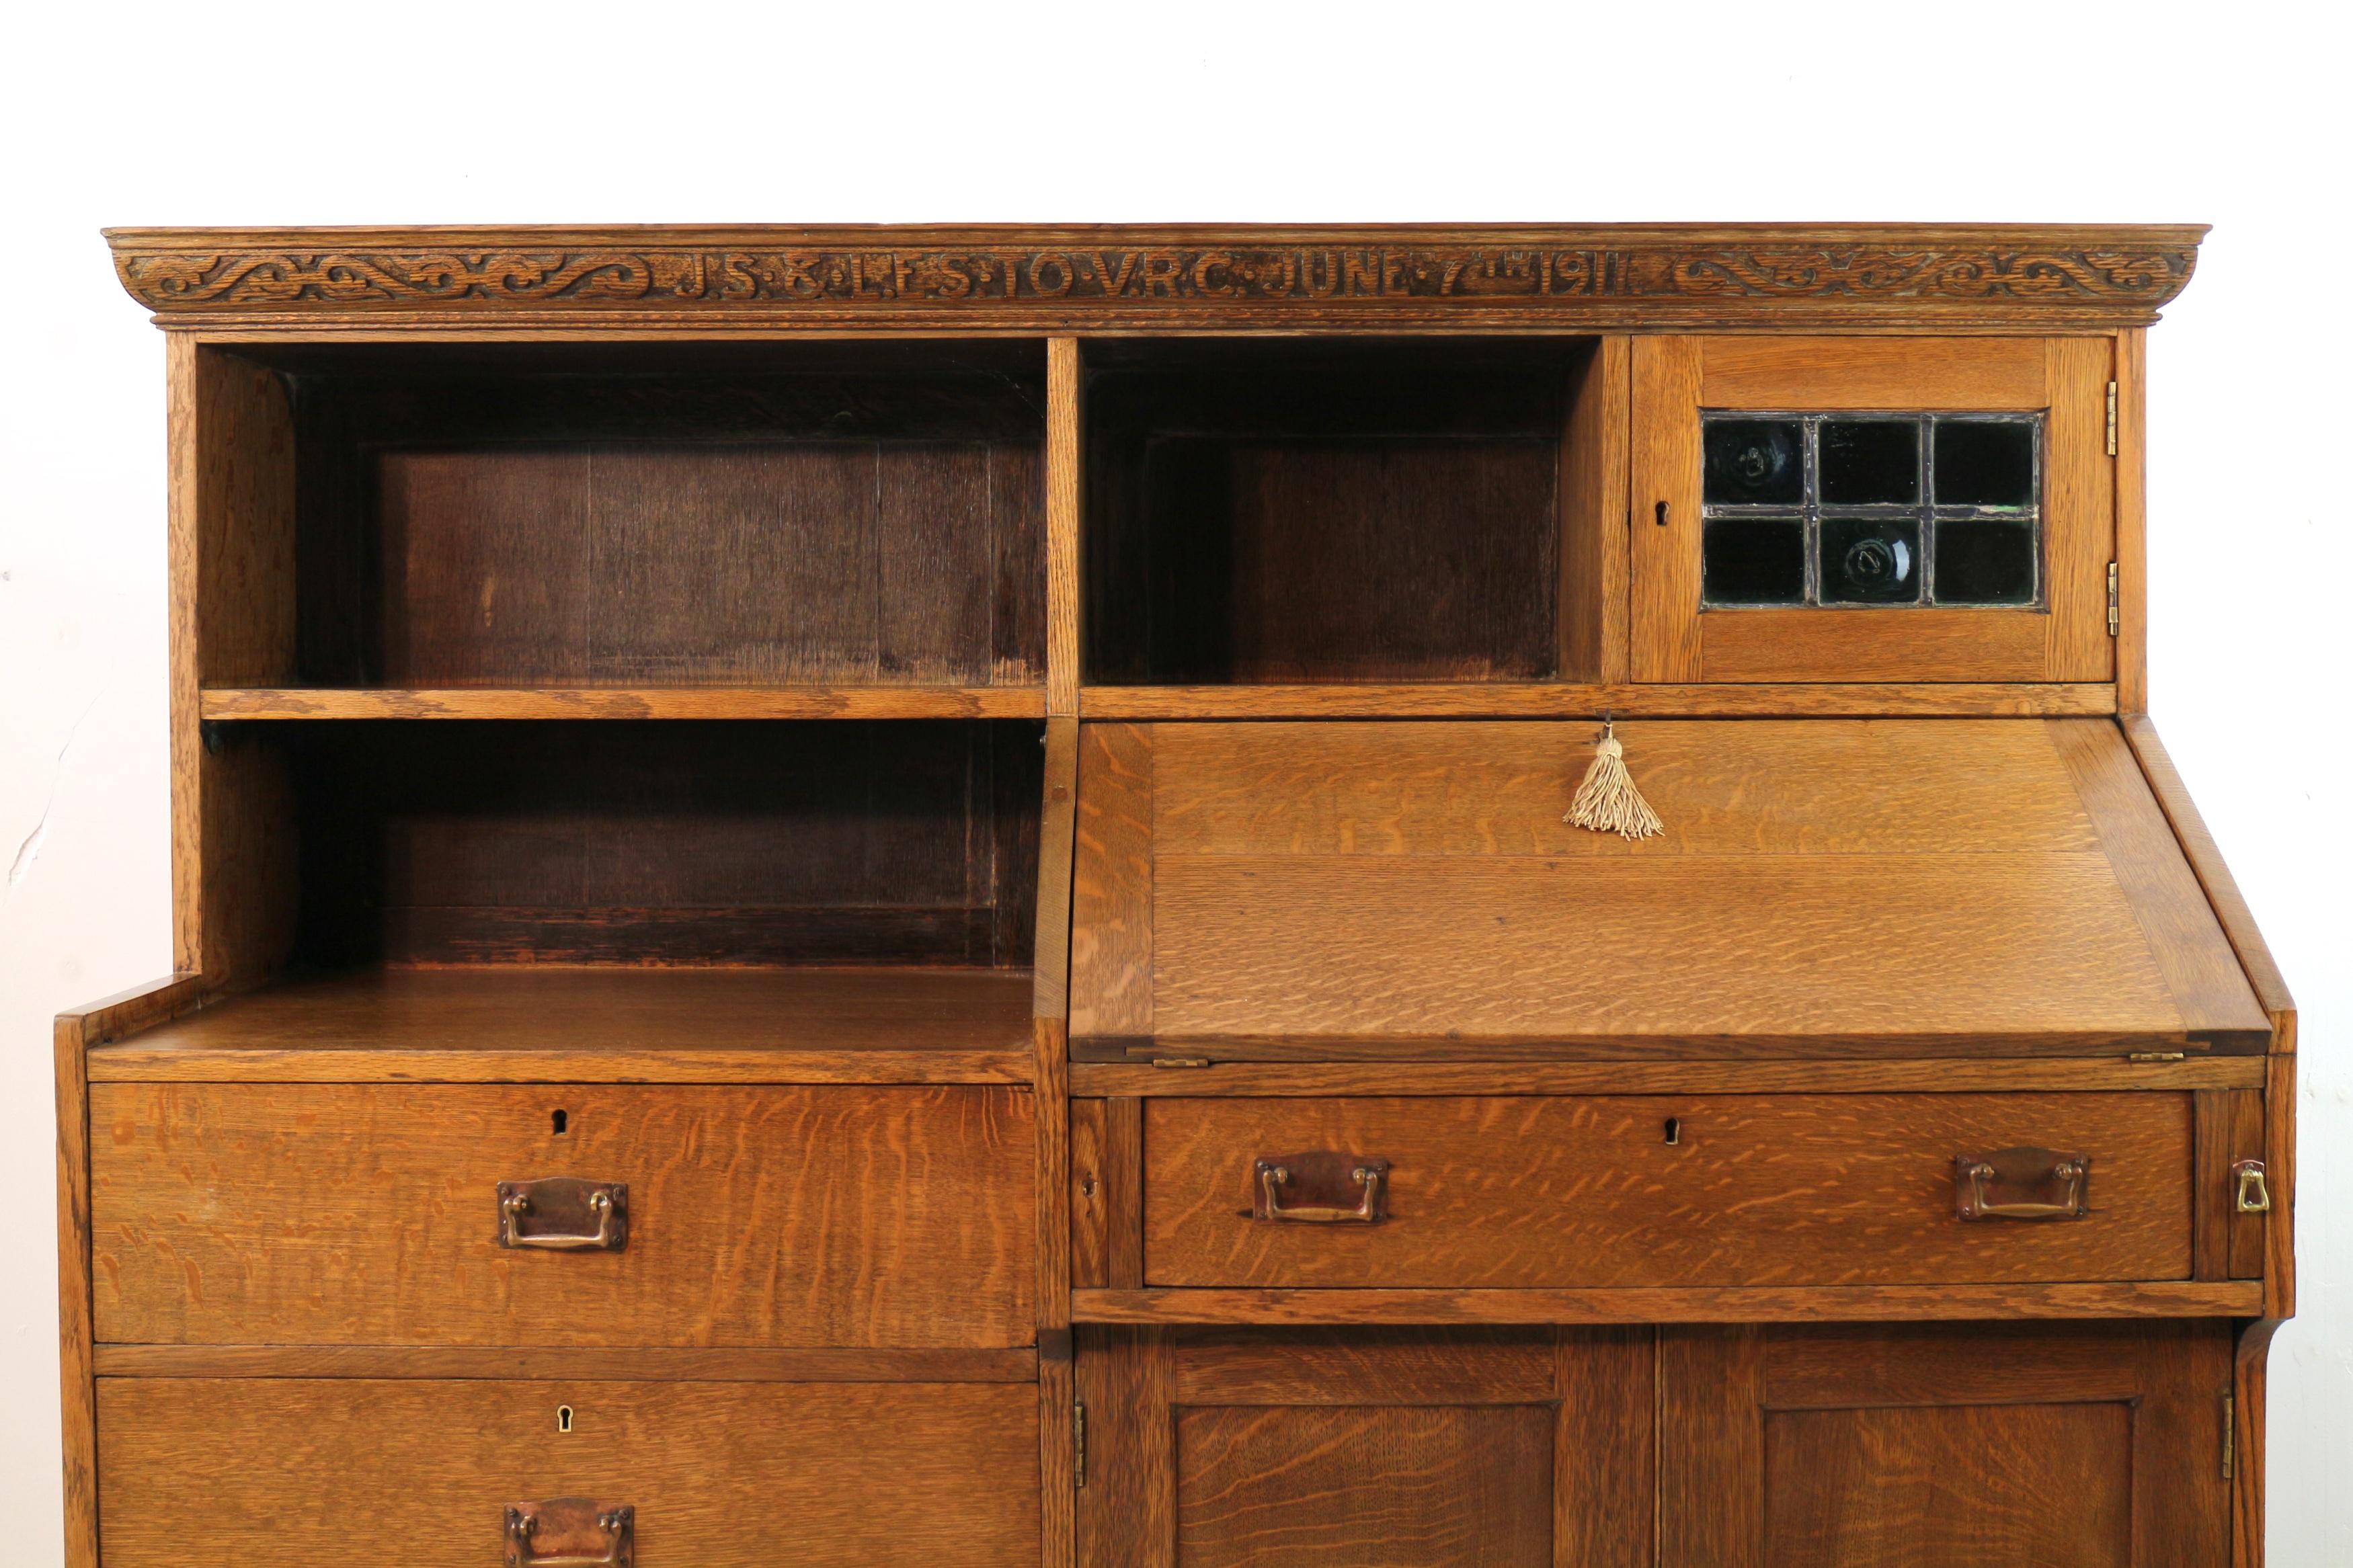 Une jolie bibliothèque-bureau de style Arts & Crafts, en chêne scié sur quartier, attribuée à Liberty & Co. de Londres. Avec une corniche moulurée et sculptée portant l'inscription 